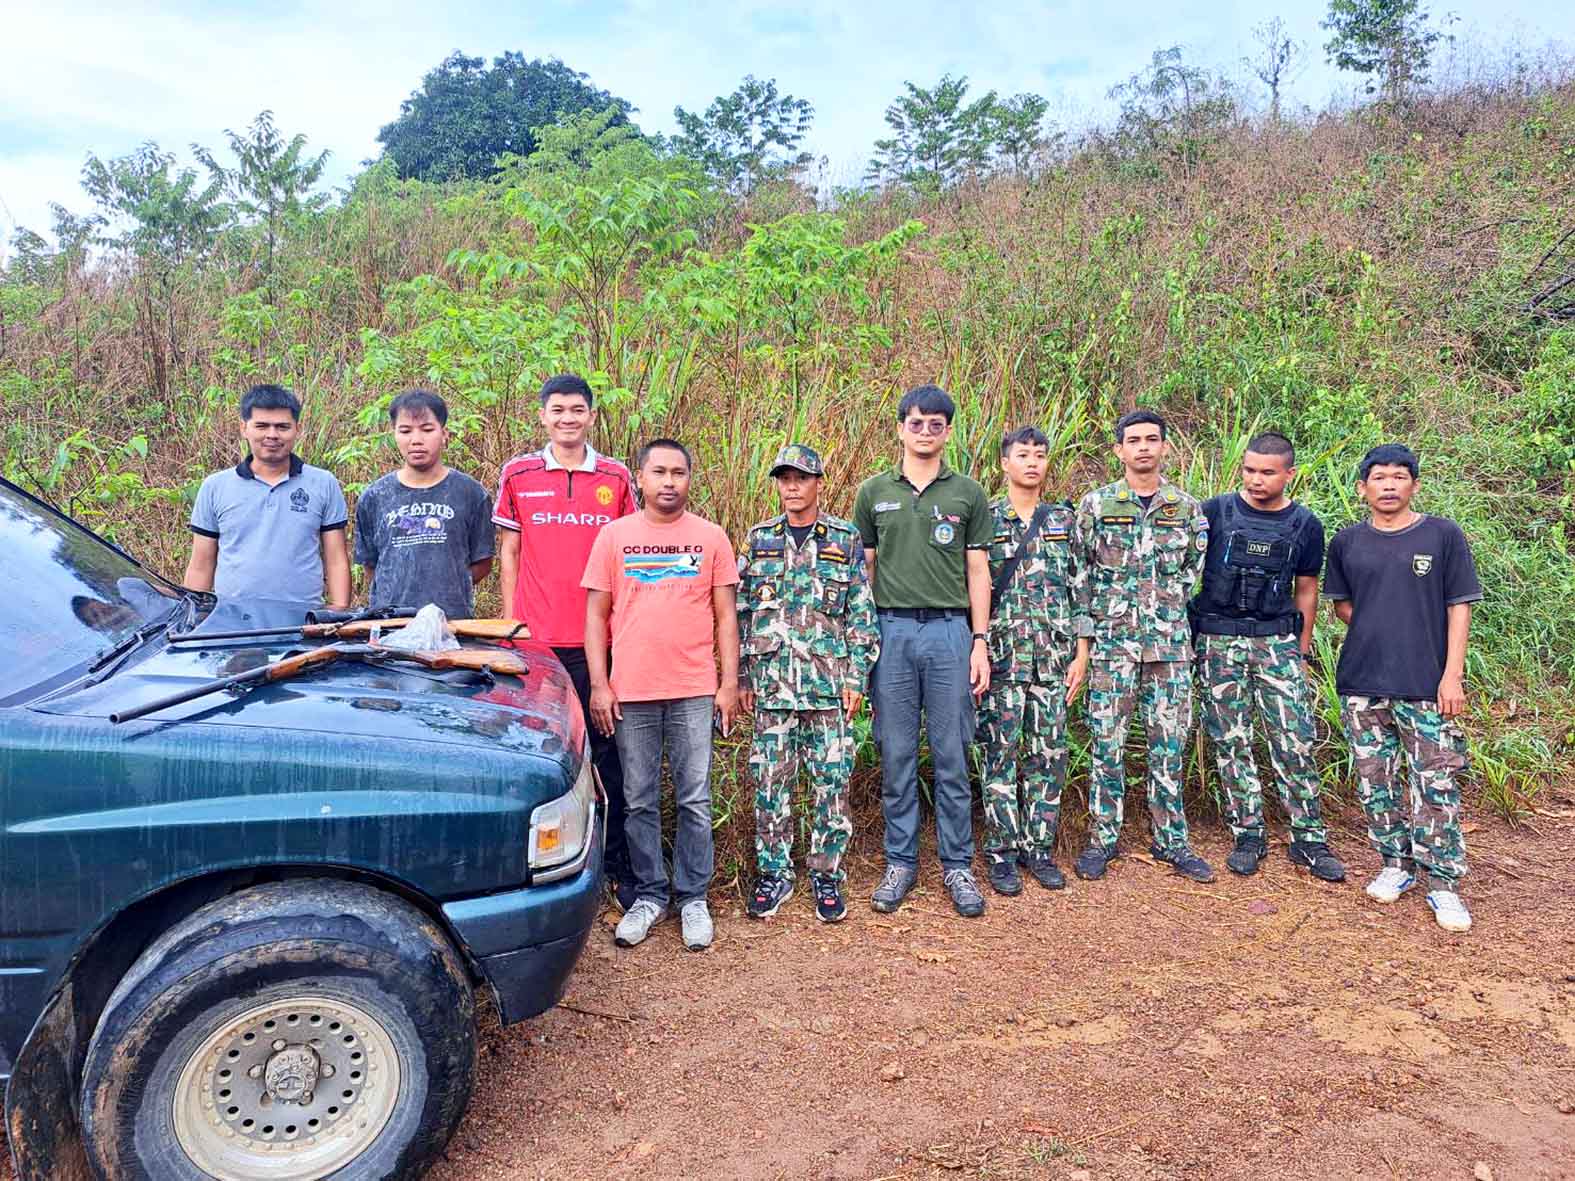 ประจวบคีรีขันธ์-อช.กุยบุรี รวบหนุ่มถือปืนเข้าไปล่าสัตว์ในเขตอุทยานฯ